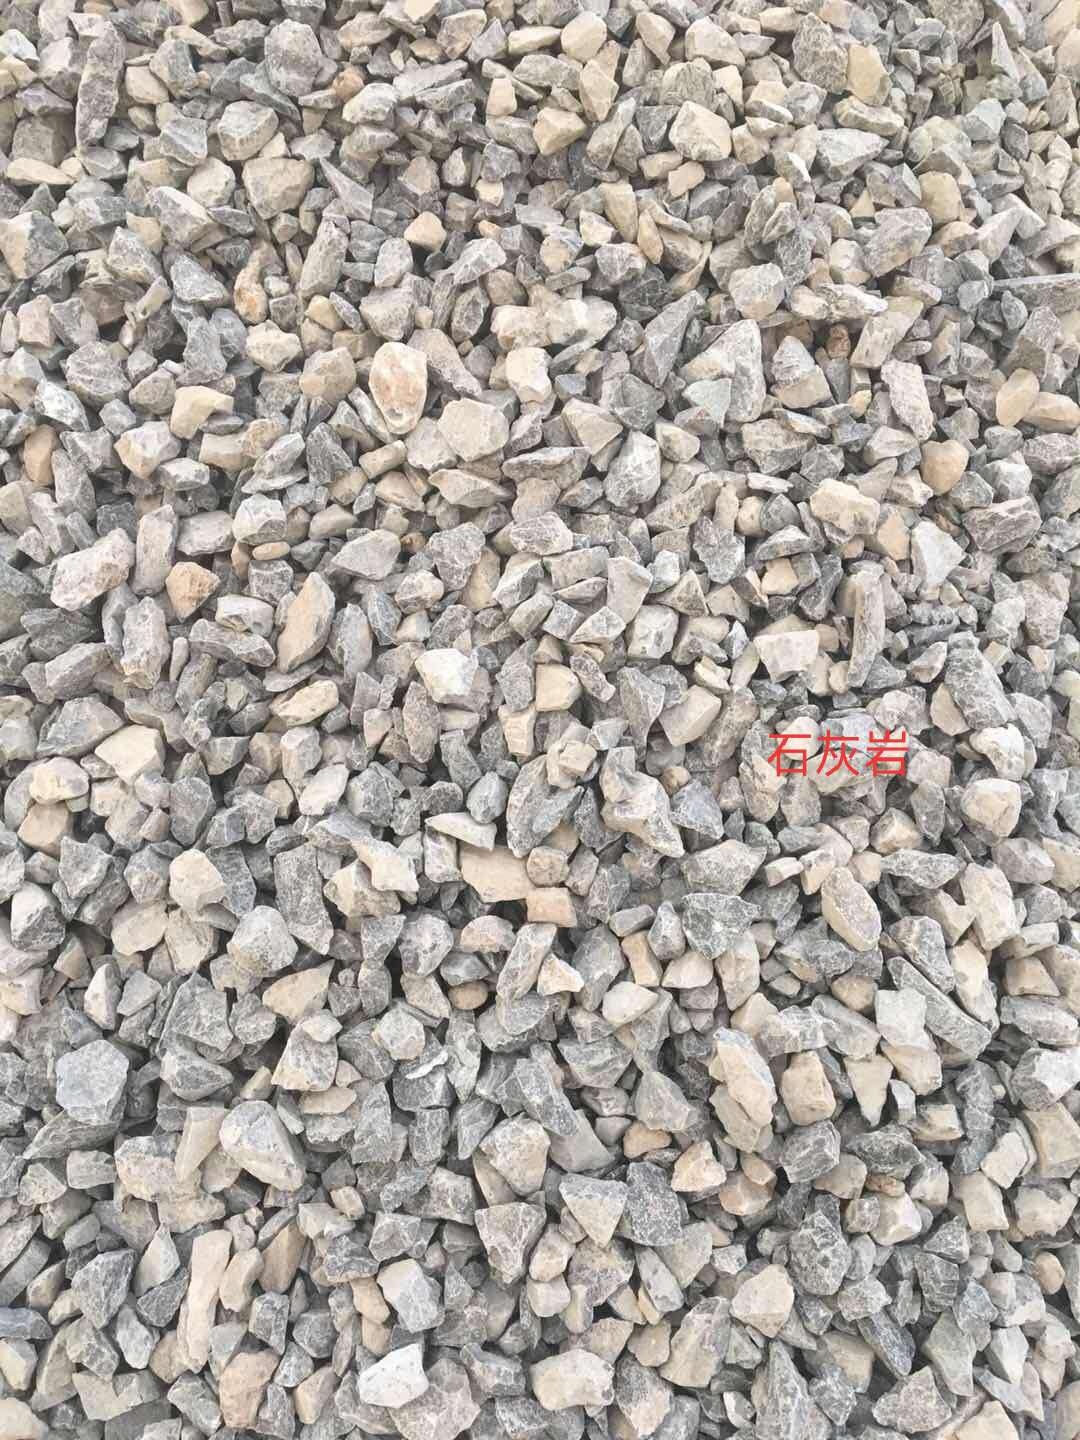 三门峡石灰岩石料厂家 品质可靠 青石